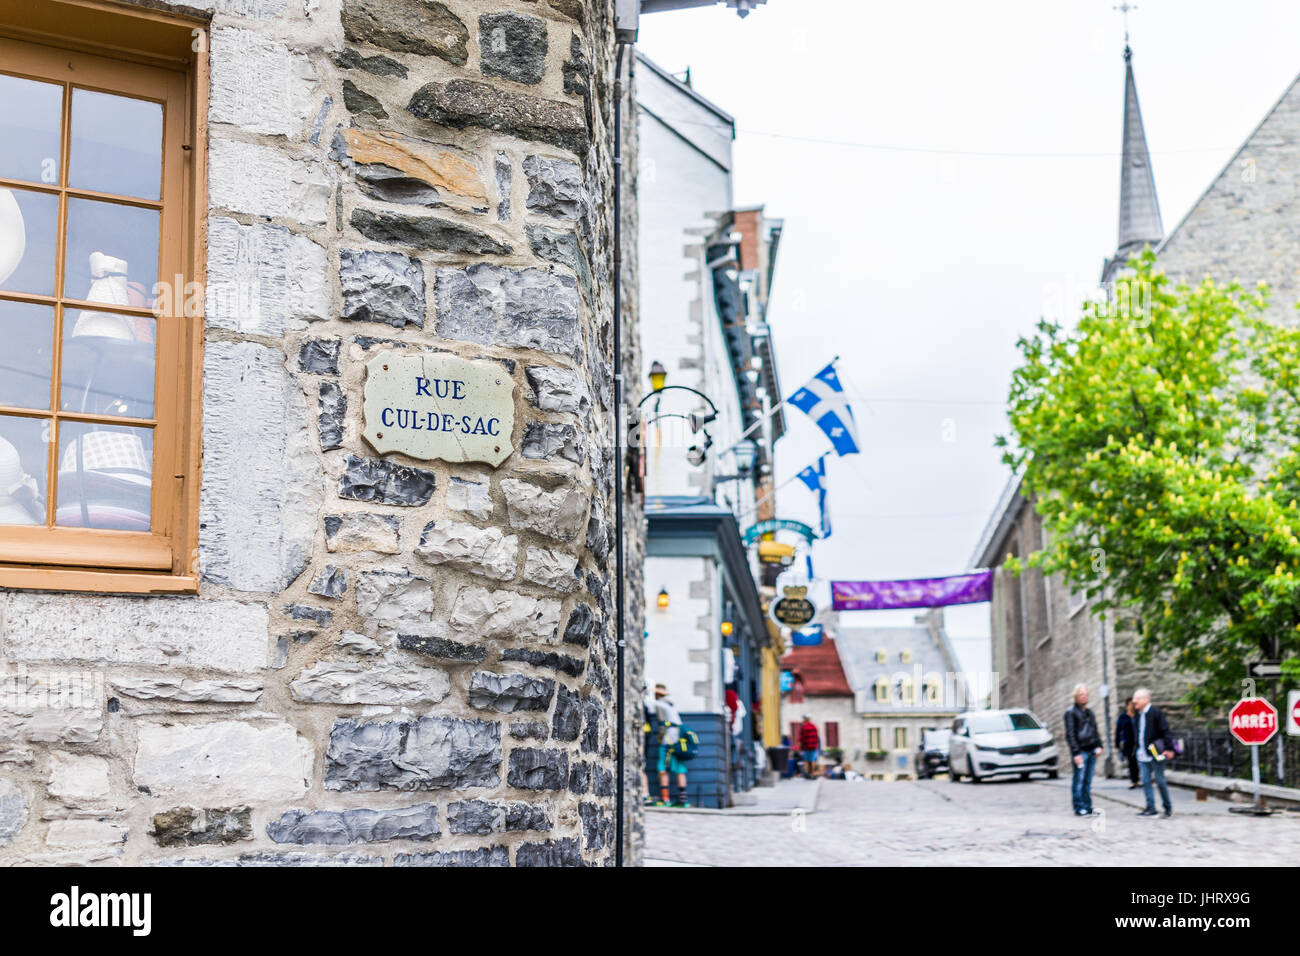 La ville de Québec, Canada - 30 mai 2017 : rue de la vieille ville avec de gros plan Rue Cul-De-Sac sign Banque D'Images